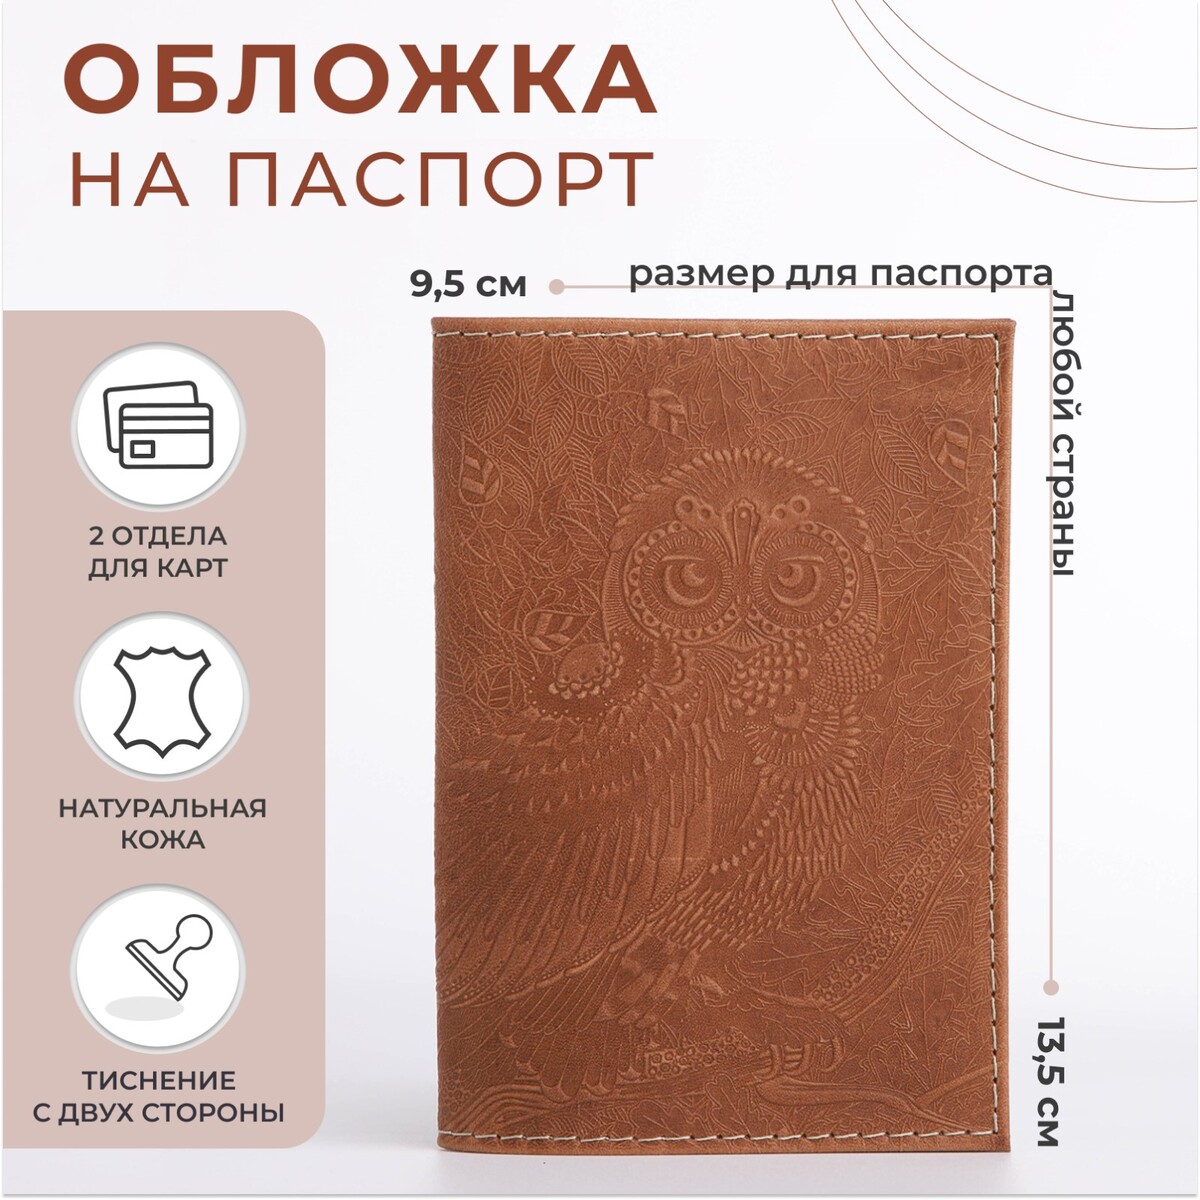 Обложка для паспорта, цвет темно-бежевый обложка шейкер для паспорта van gogh